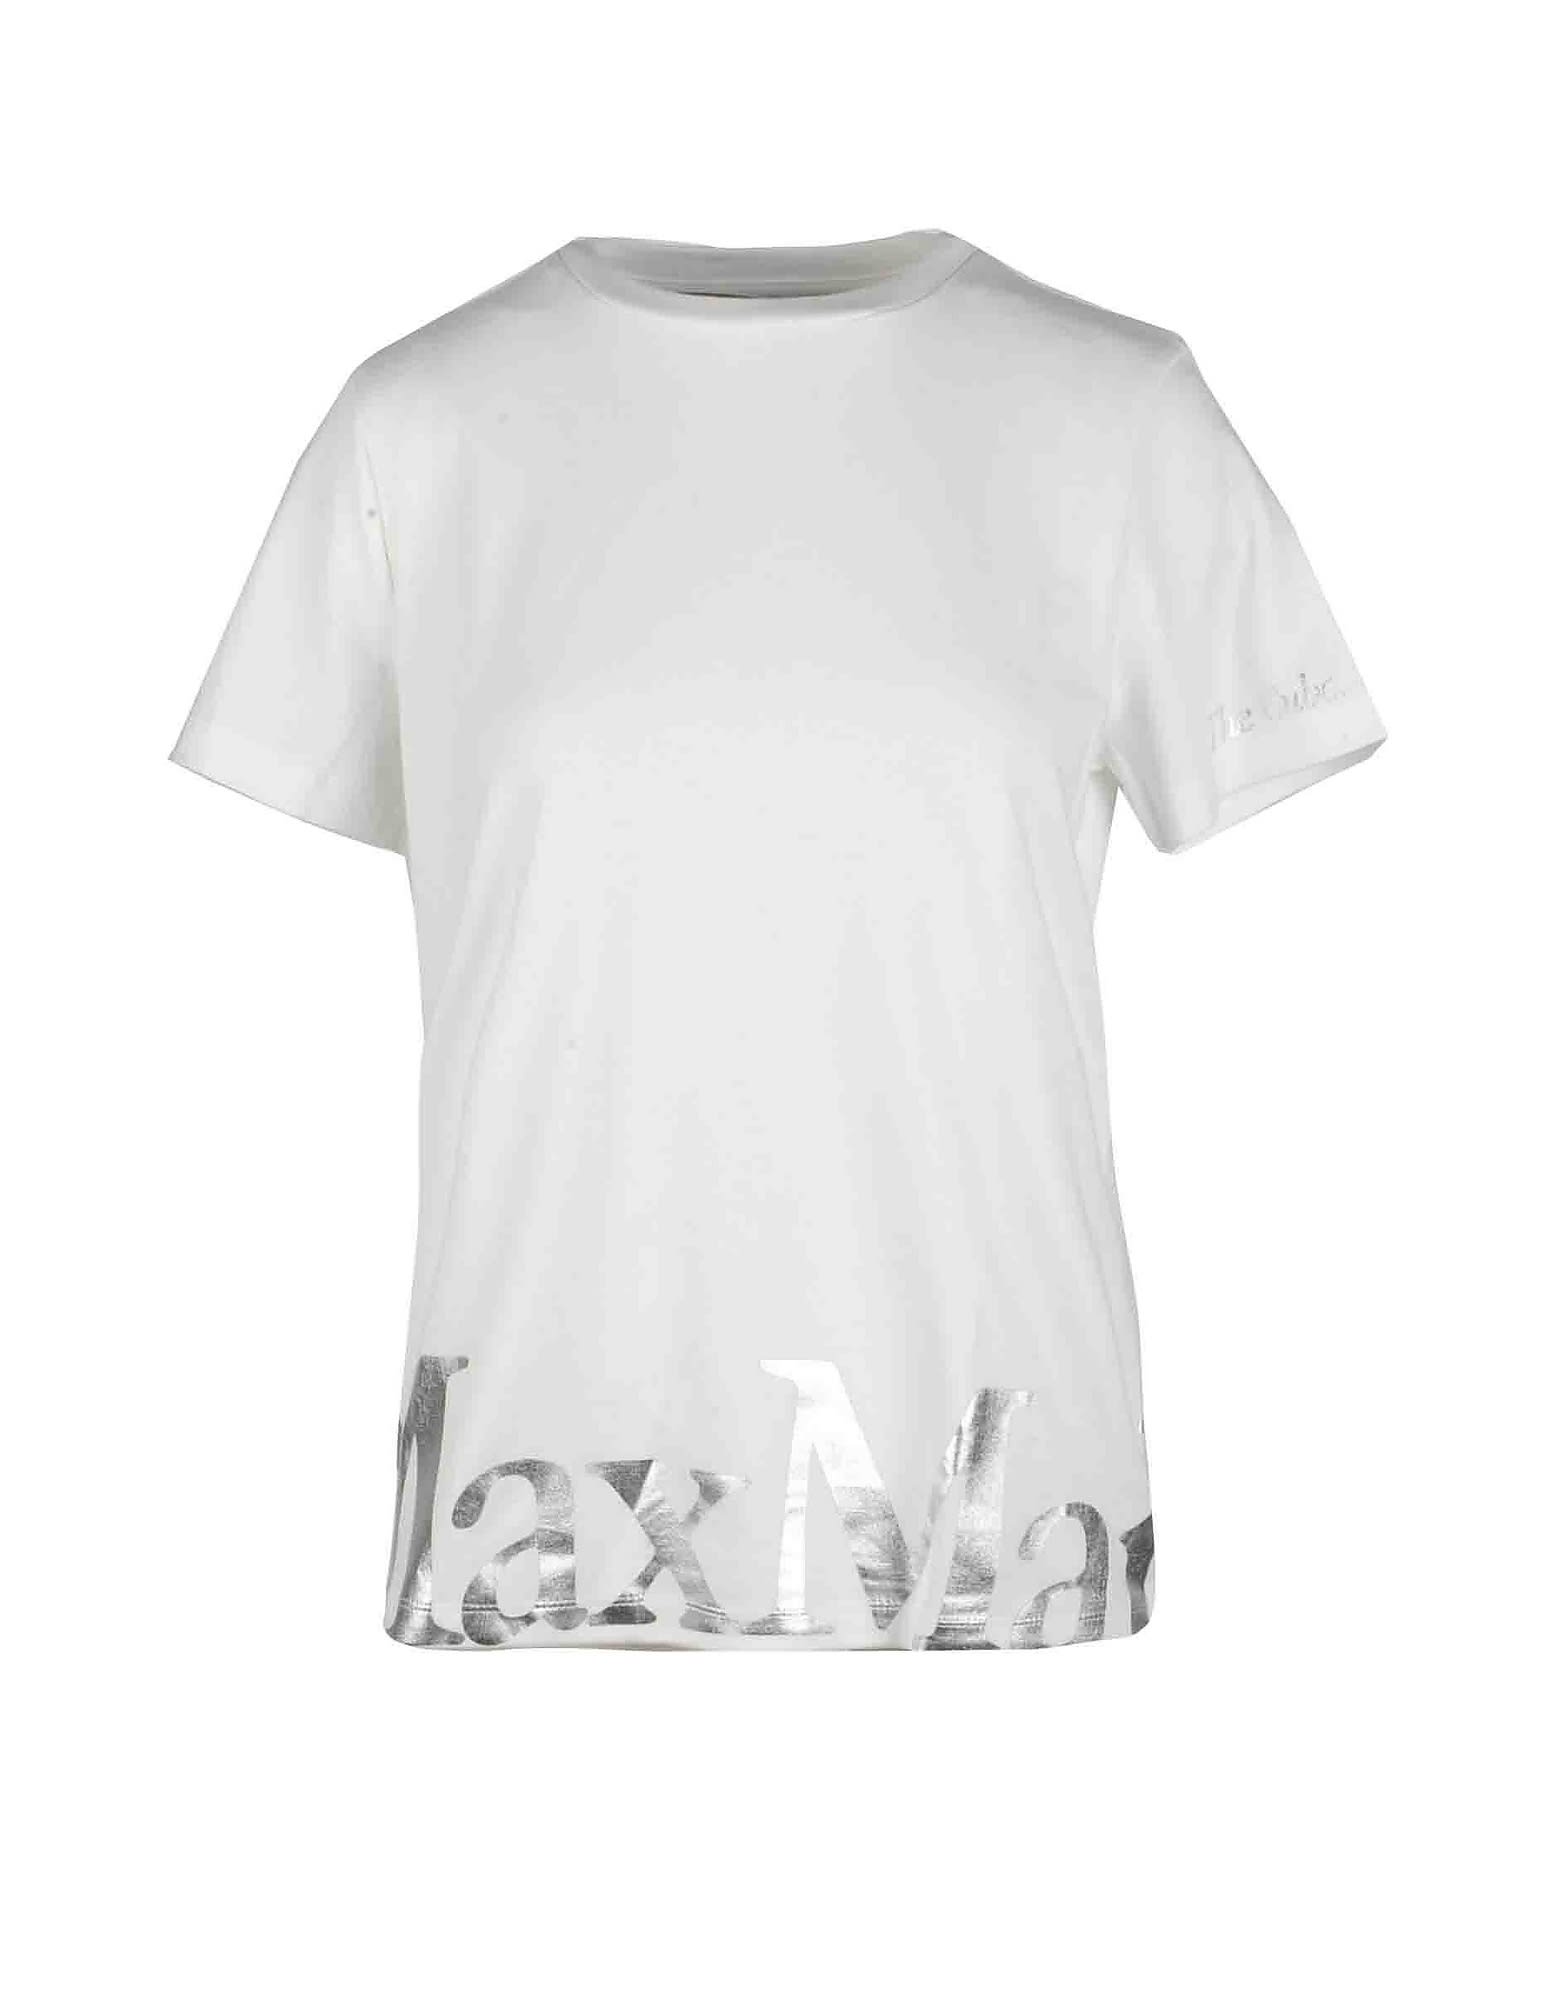 Max Mara Womens White T-shirt